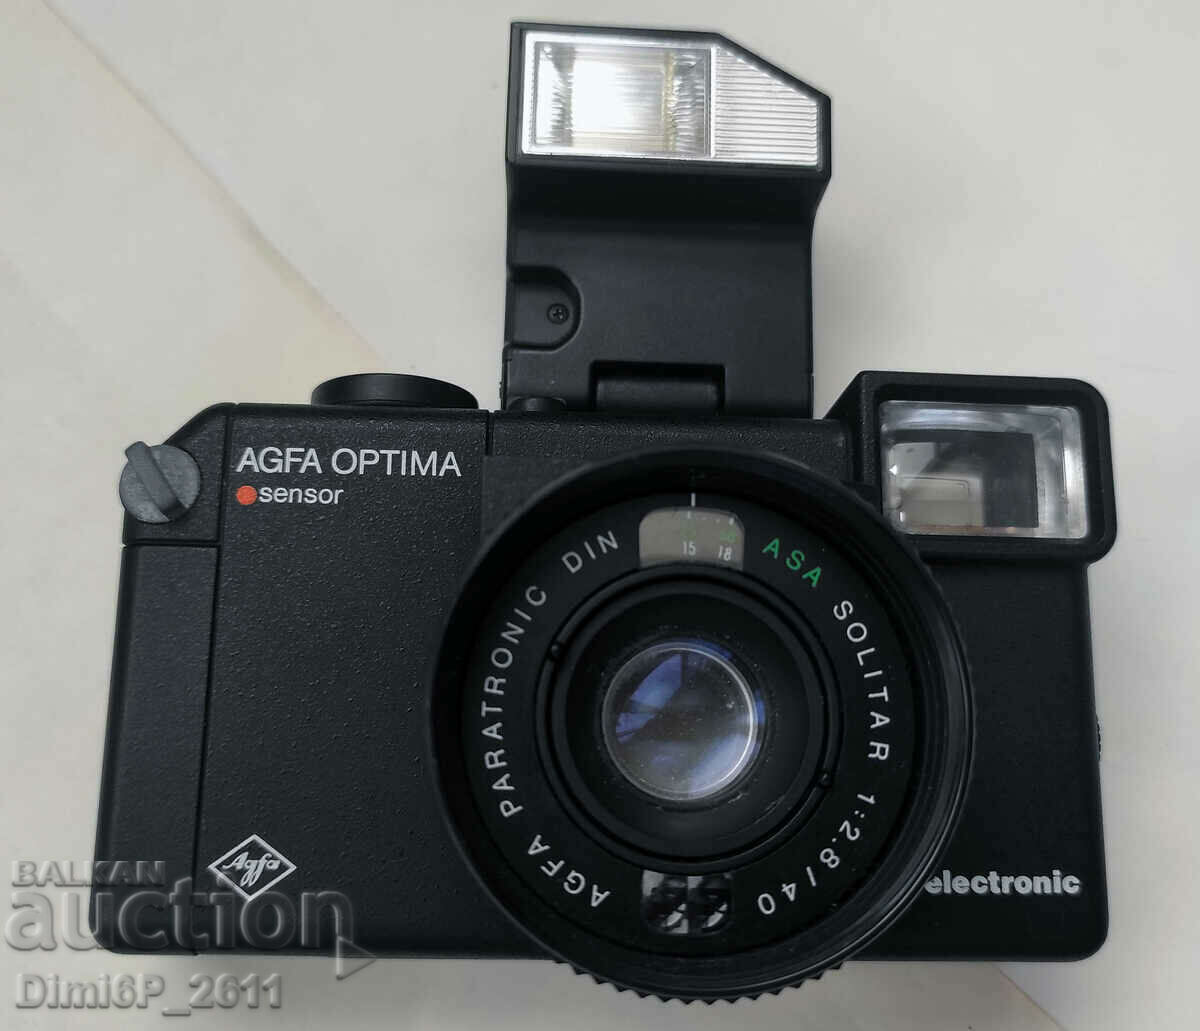 Camera electronica Agfa Optima